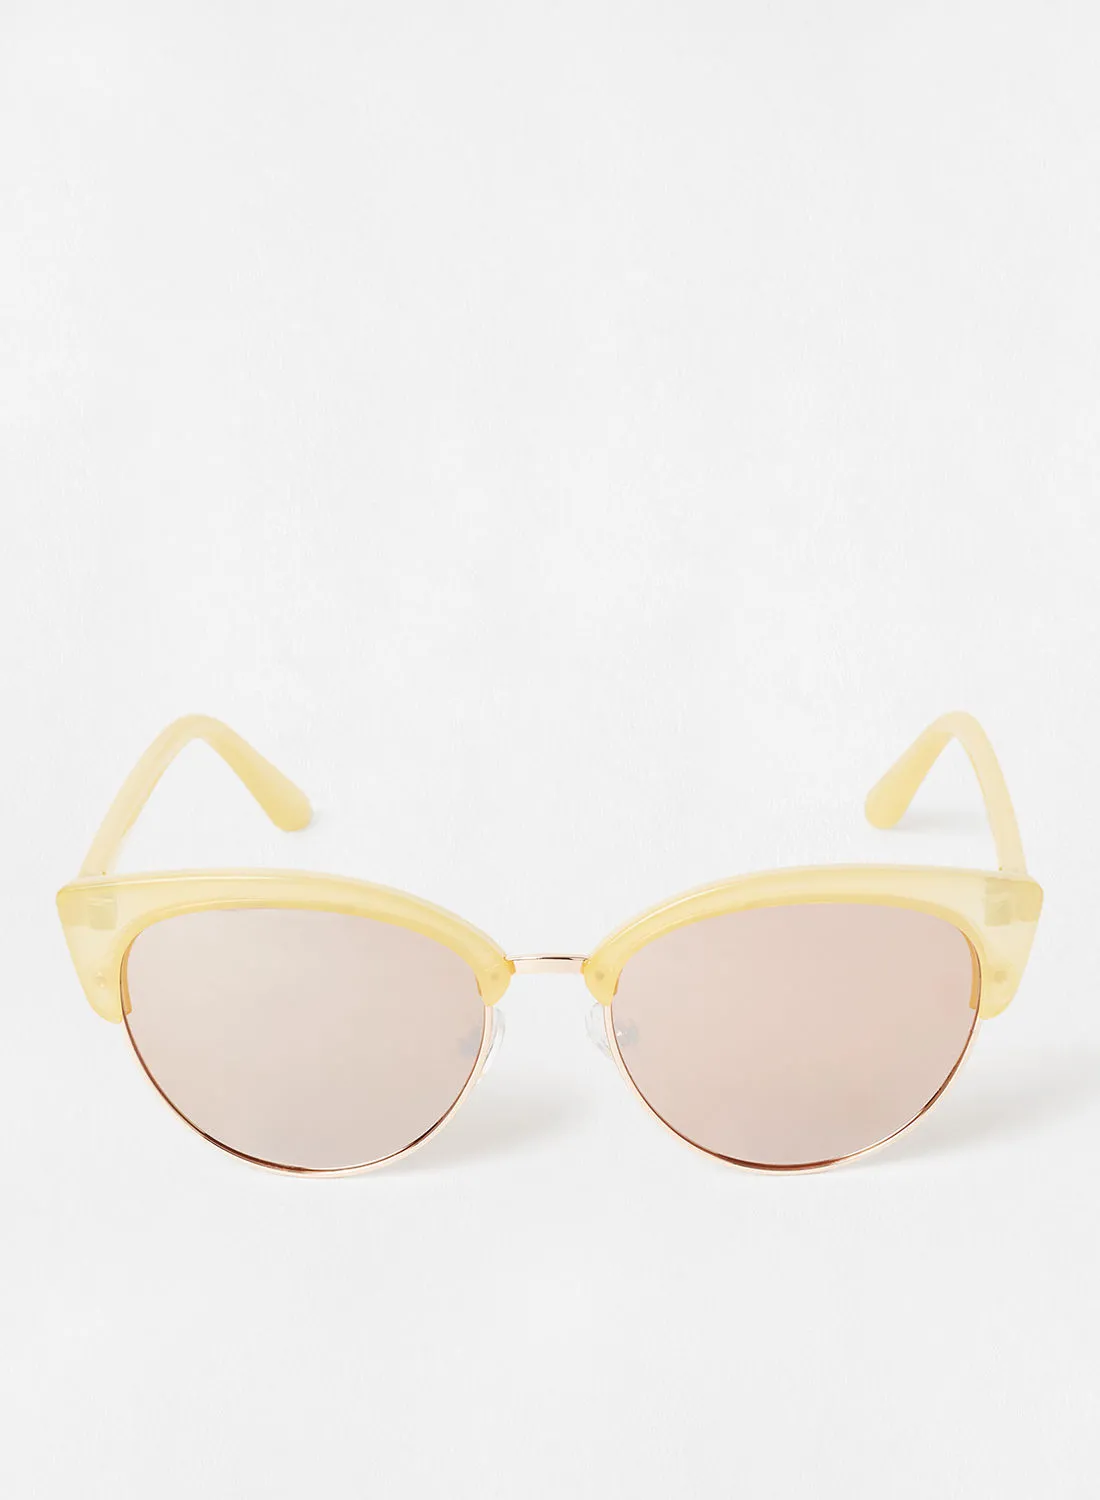 Mohito Women's Cat-Eye Sunglasses